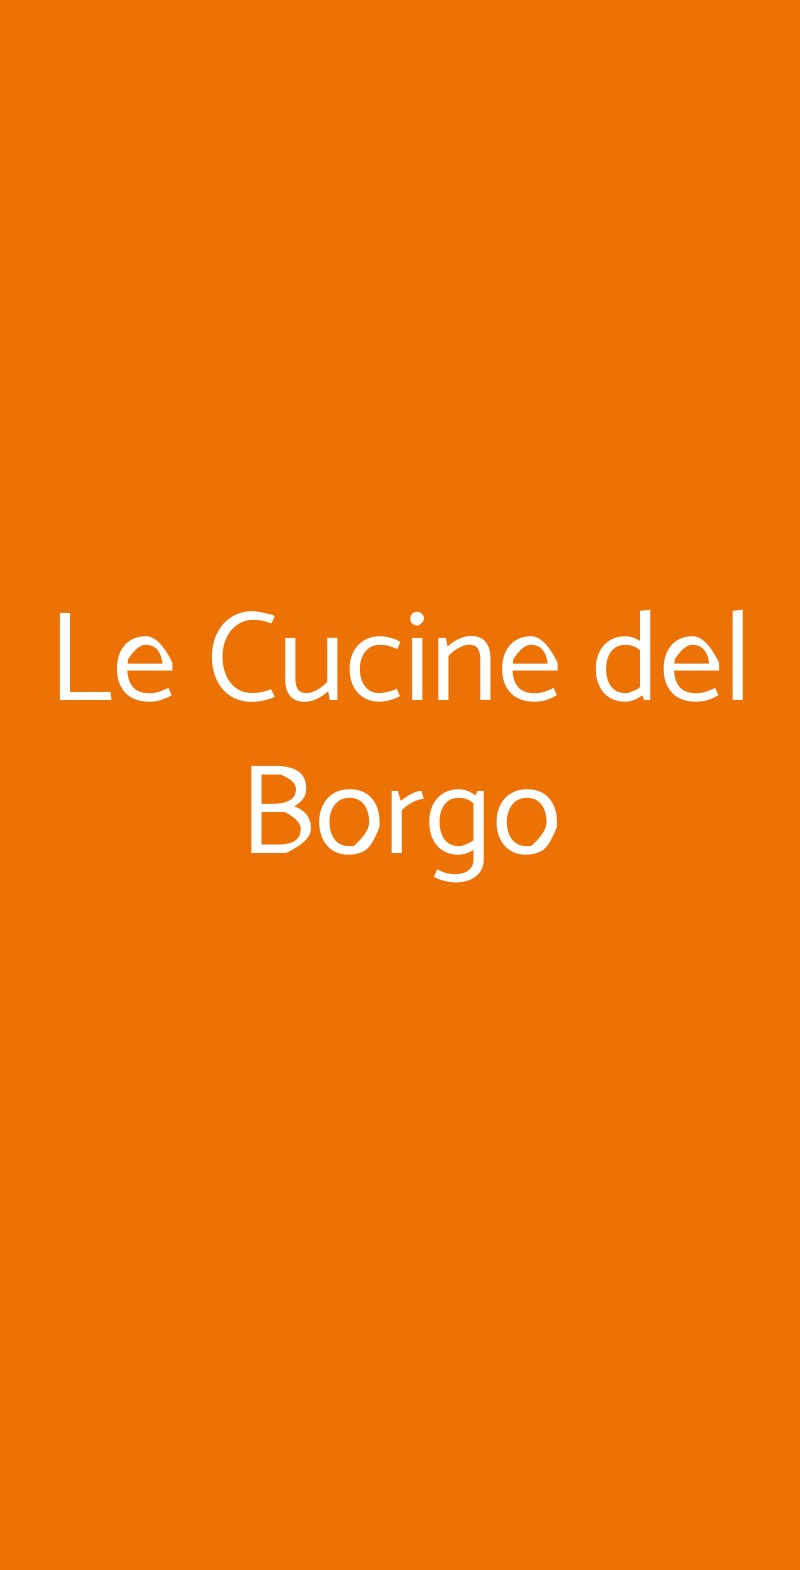 Le Cucine del Borgo Roccantica menù 1 pagina